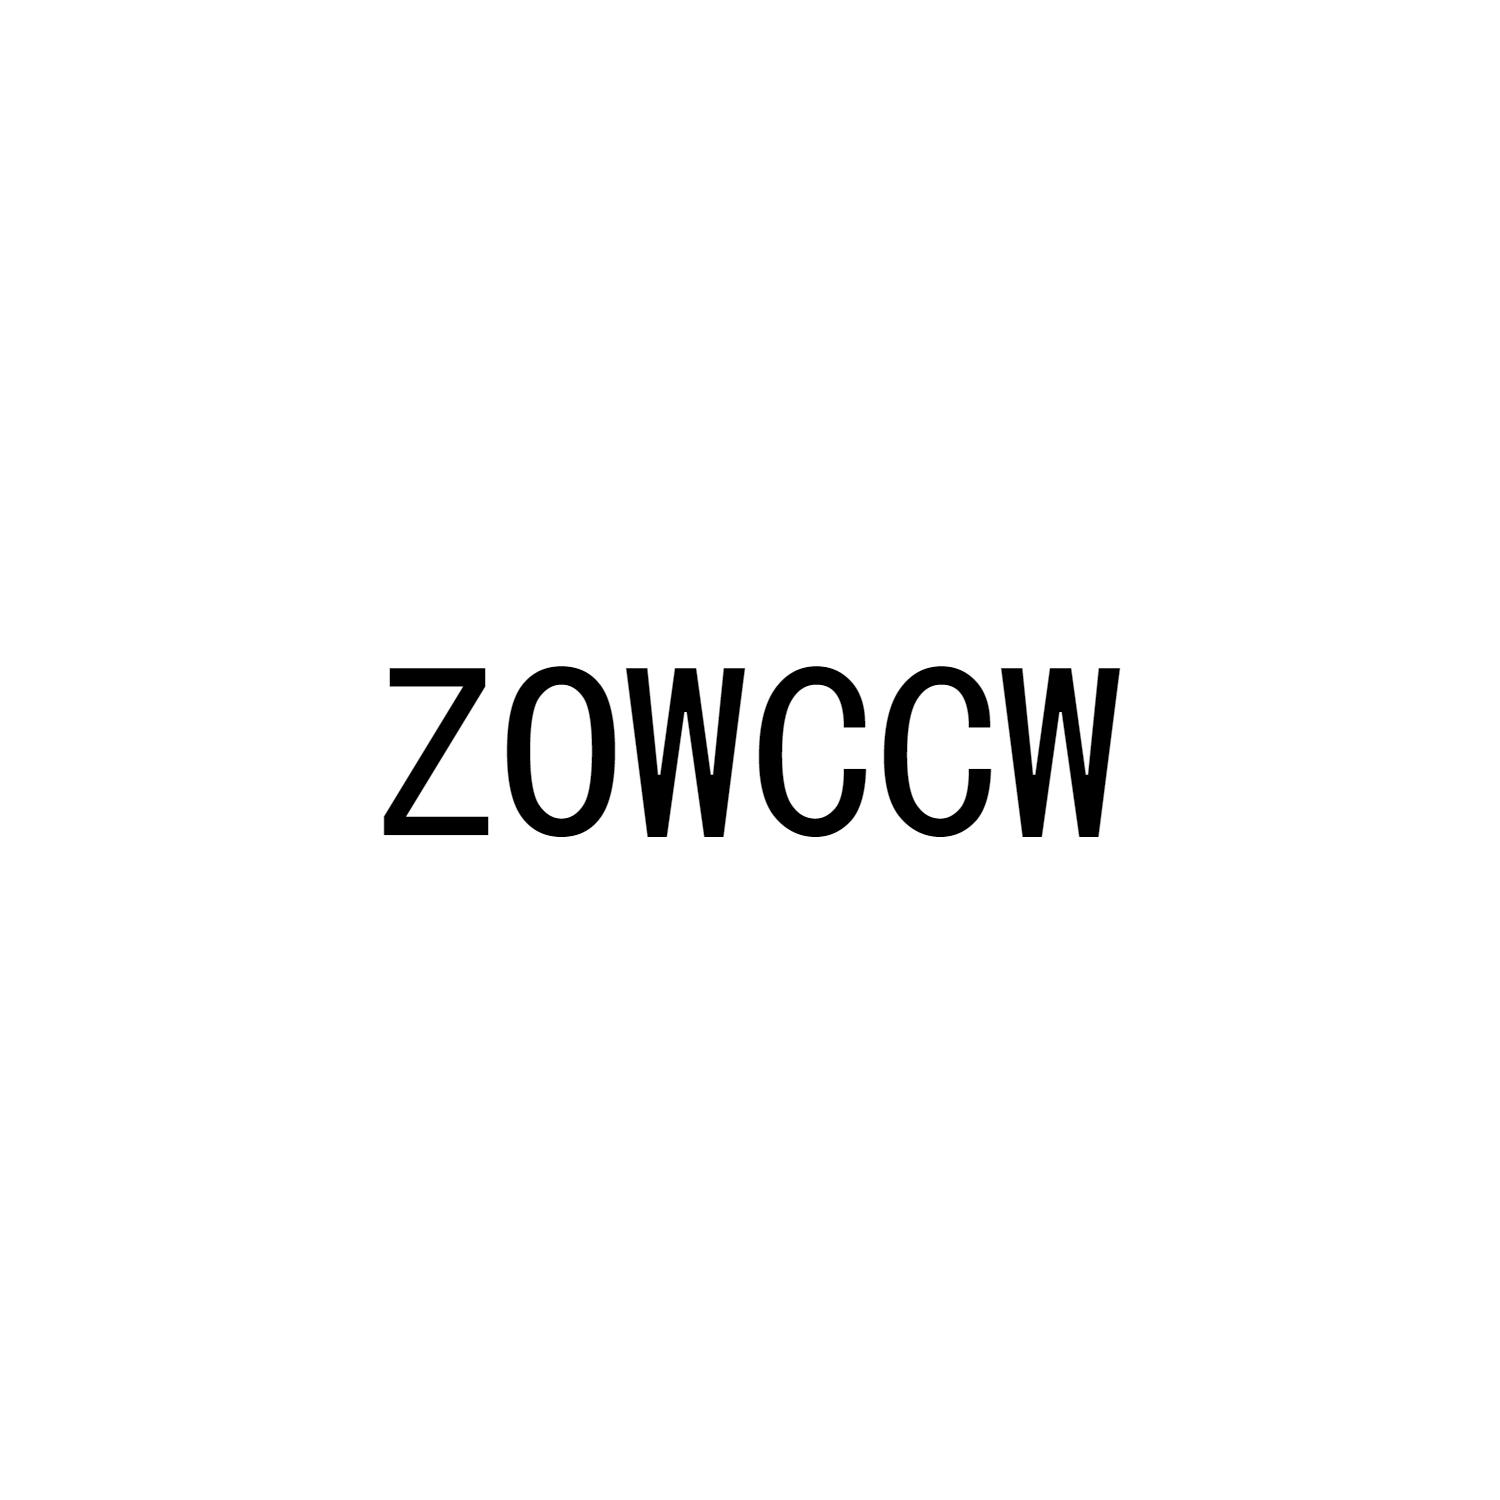 ZOWCCW